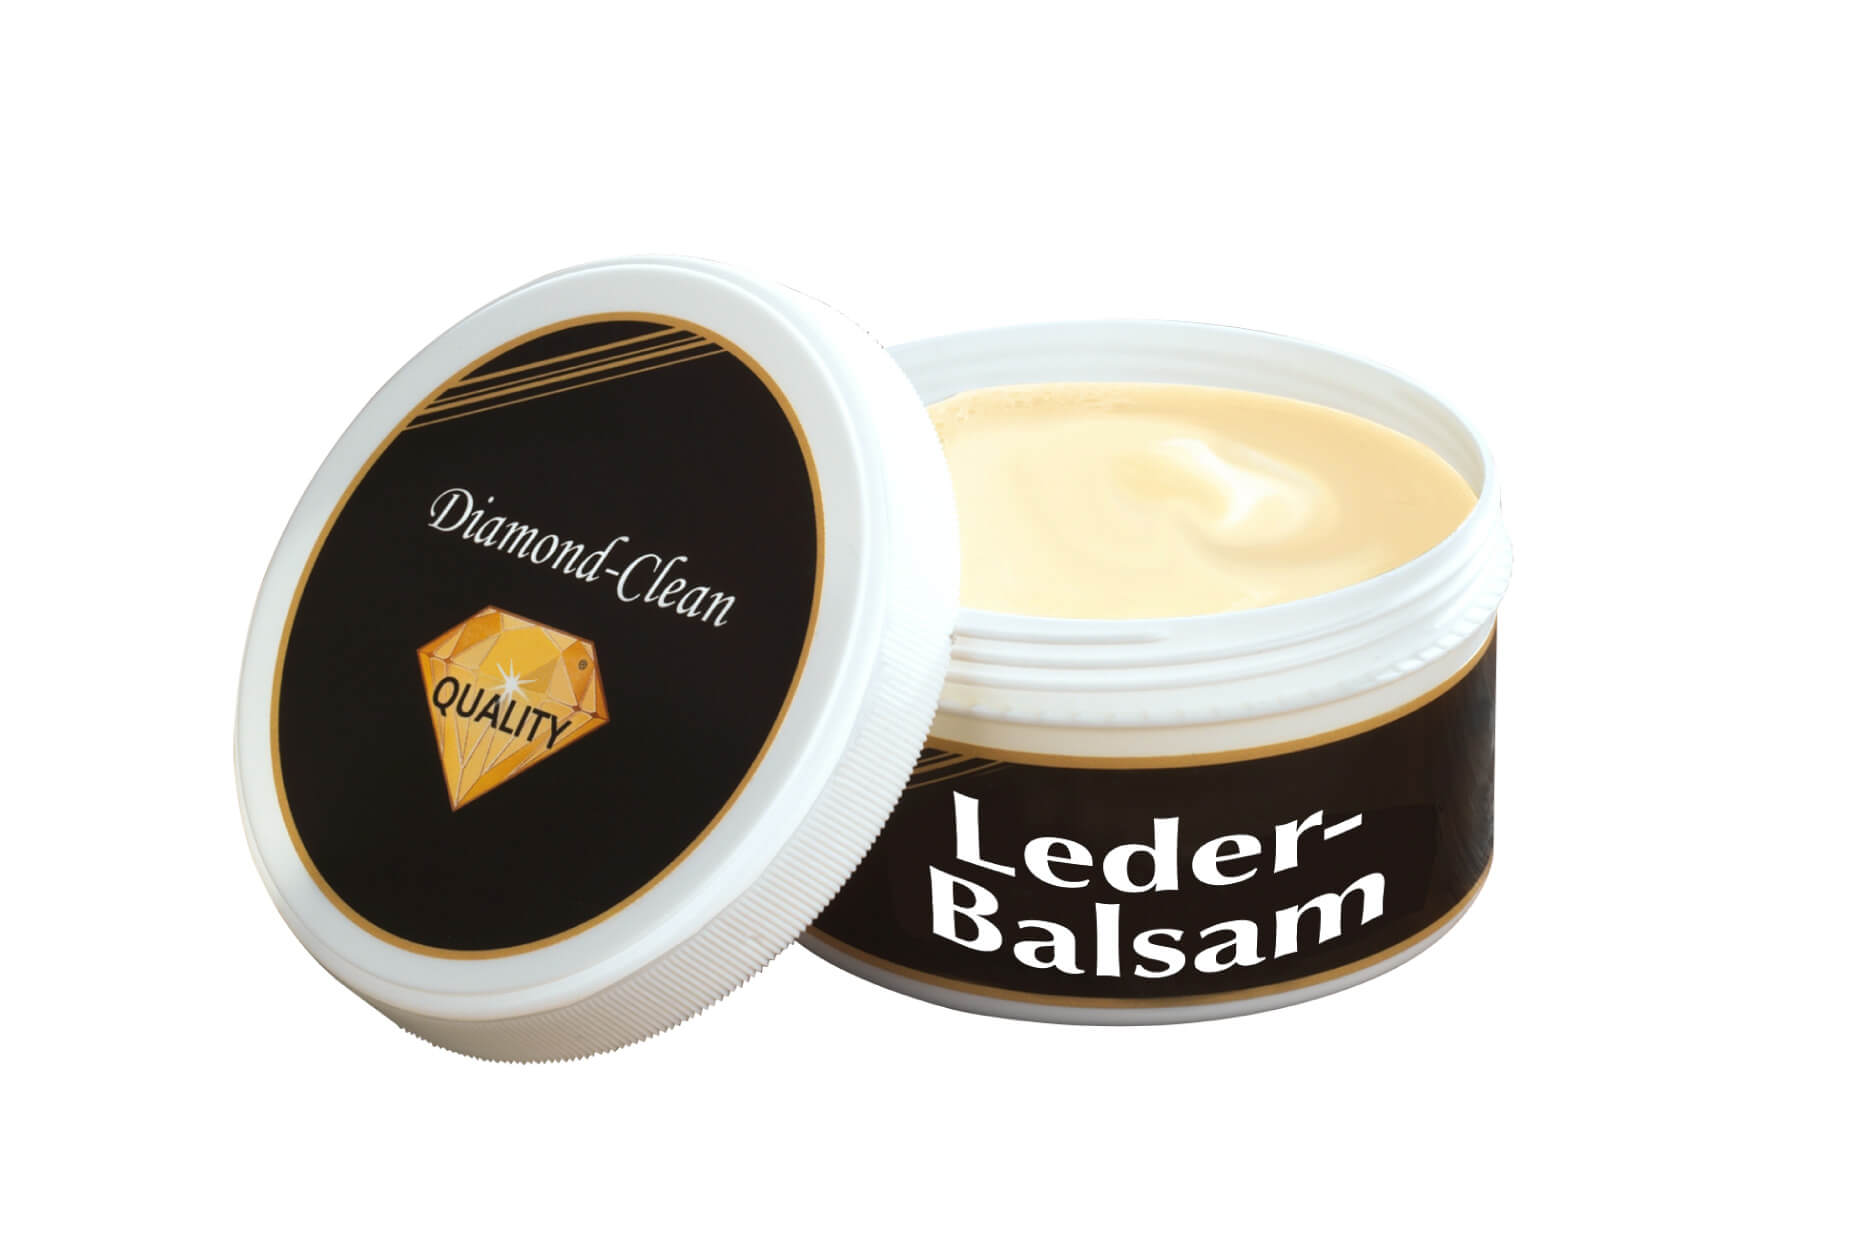 Diamond Clean Leder-Balsam, 250 ml